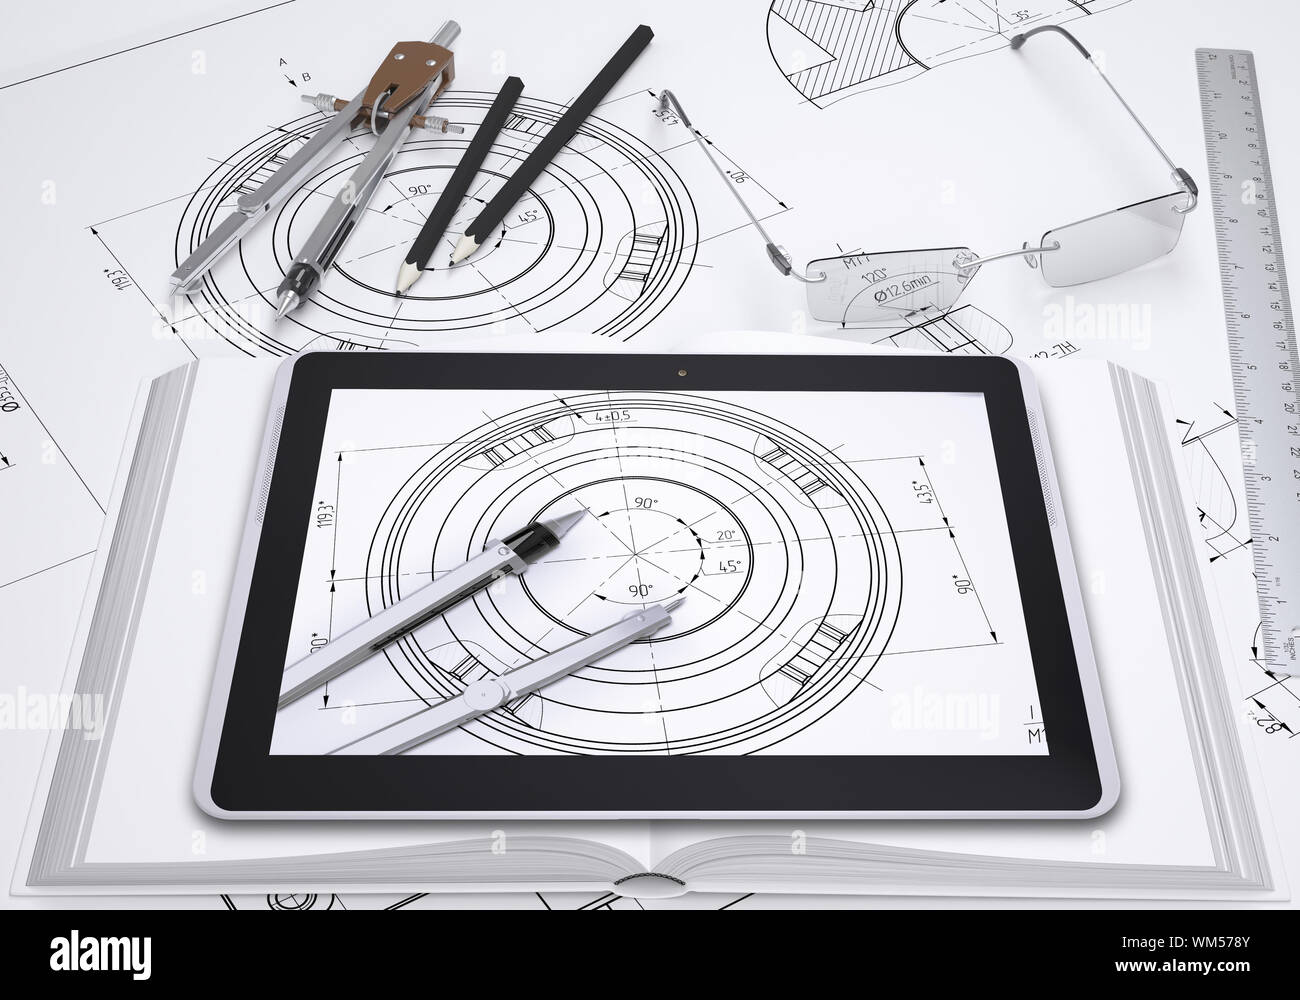 Tablet PC, zeichnen Zirkel, Bleistift, Gläser und Lineal auf spead technische Zeichnung. Der pc-Bildschirm zeigt einen Teil der gleichen Zeichnung. Stockfoto